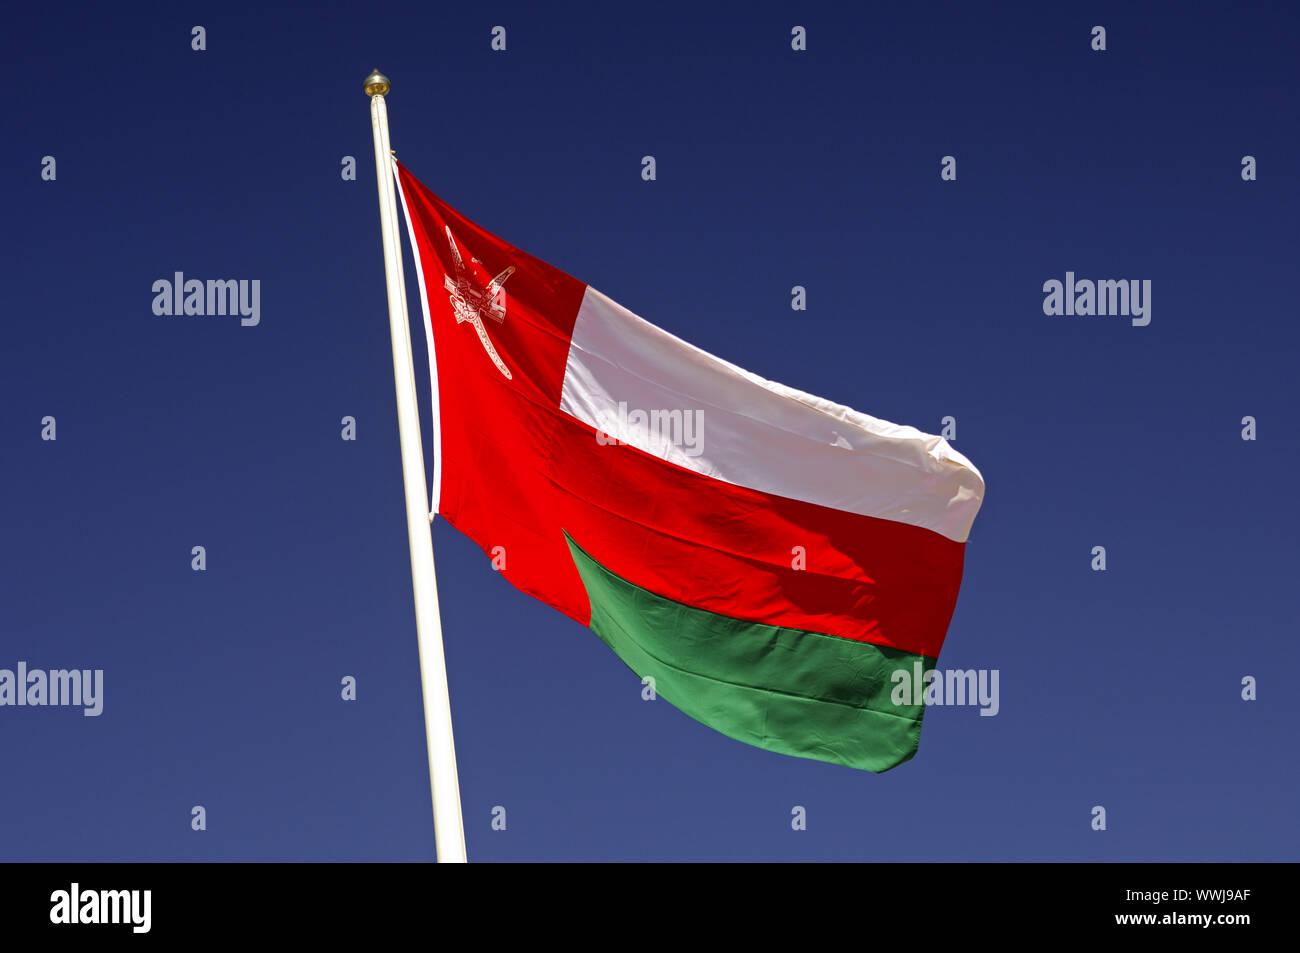 Drapeau national du Sultanat d'Oman Banque D'Images